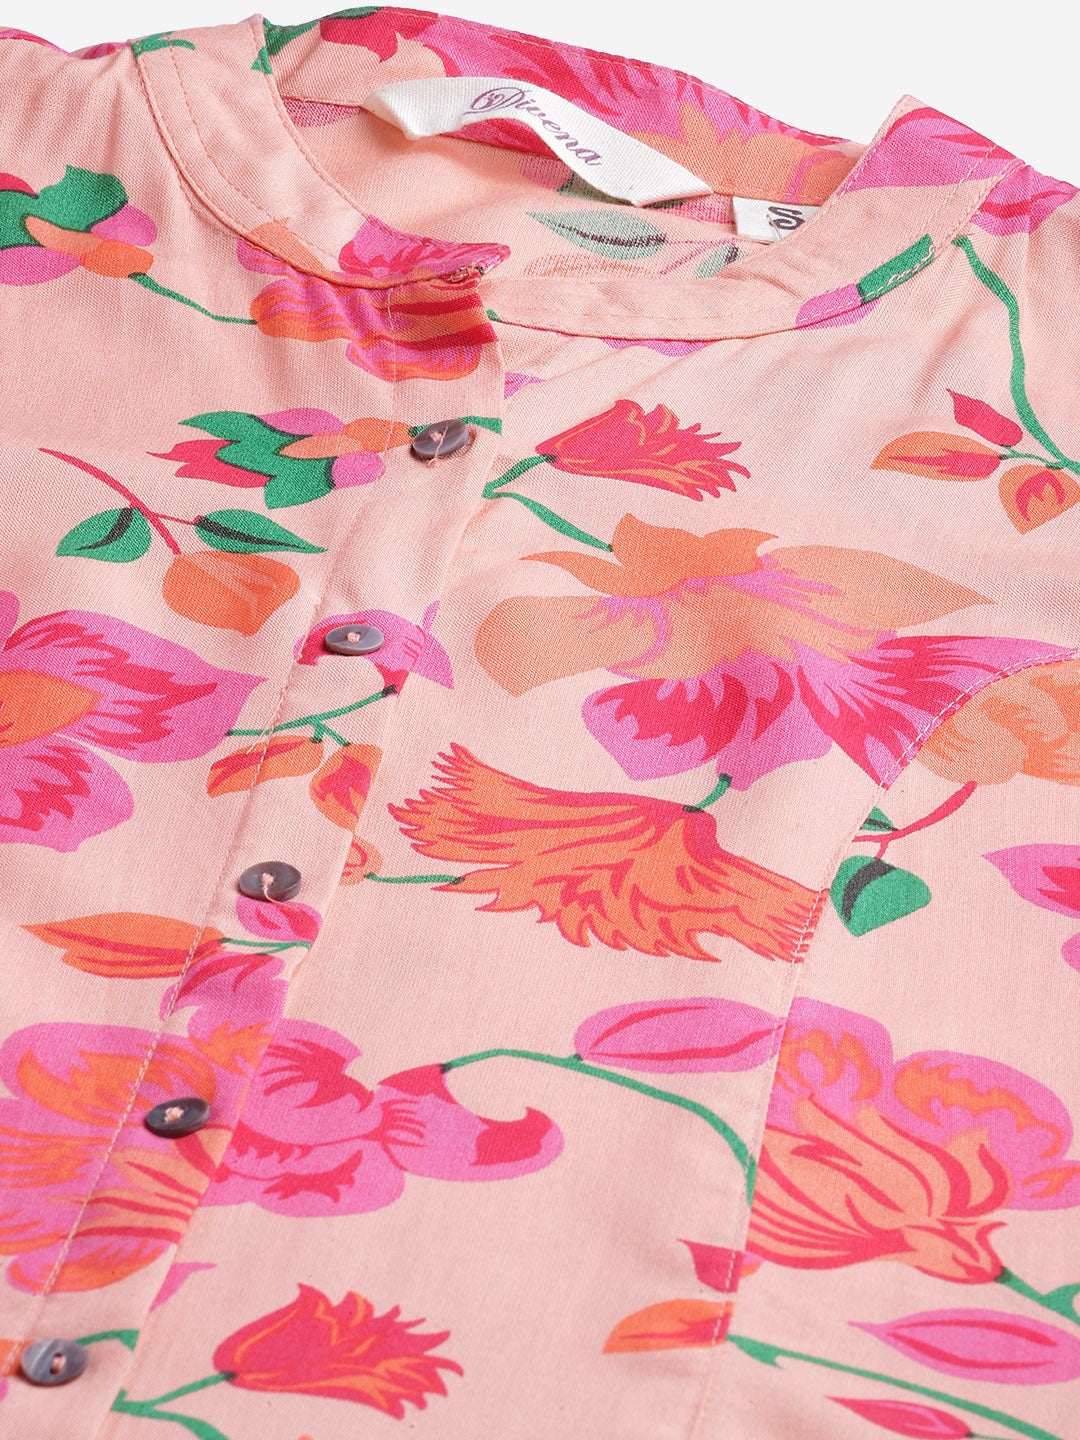 Rayon Peach Floral Print Top